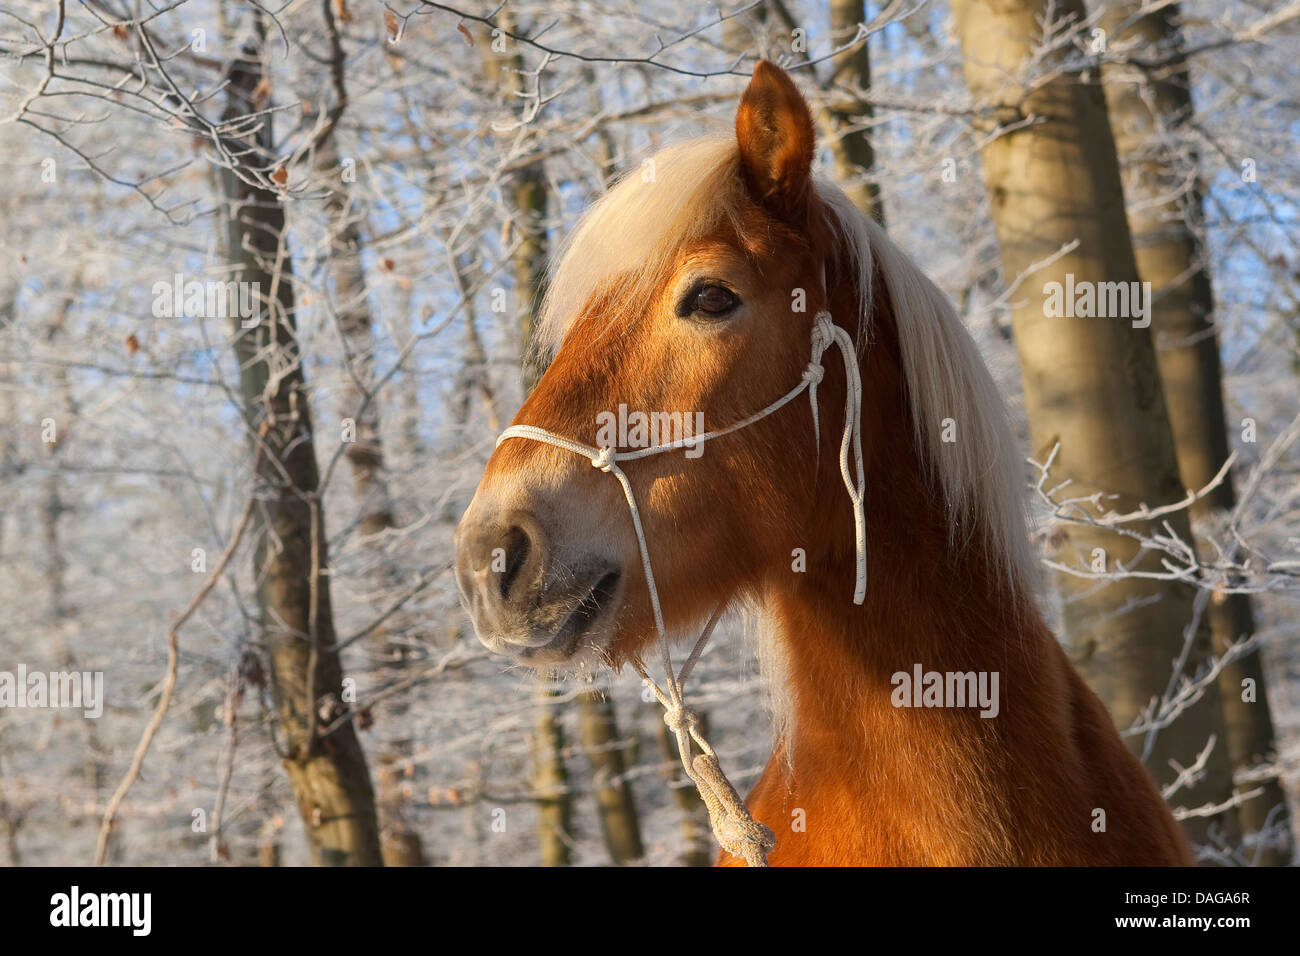 Cheval Haflinger (Equus przewalskii f. caballus), portrait d'une forêt d'hiver Banque D'Images